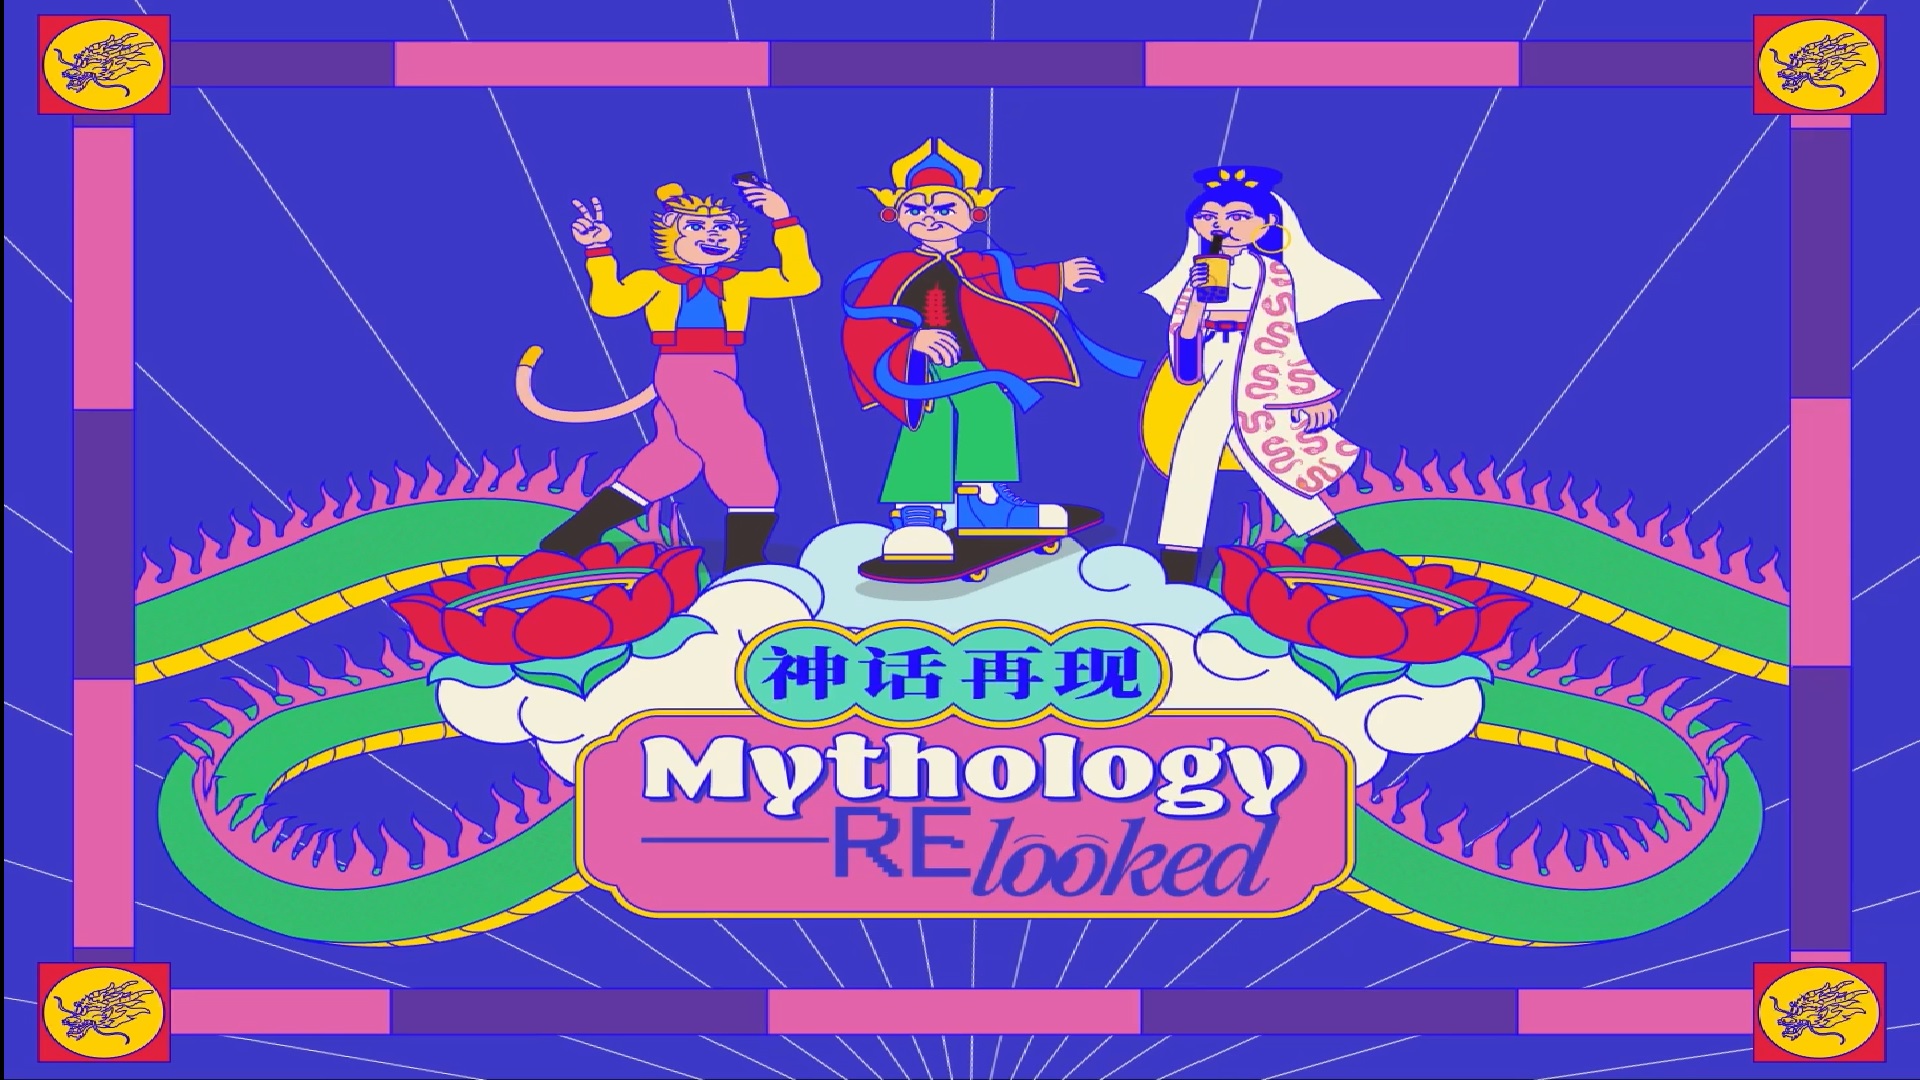 mythology-relooked-remix